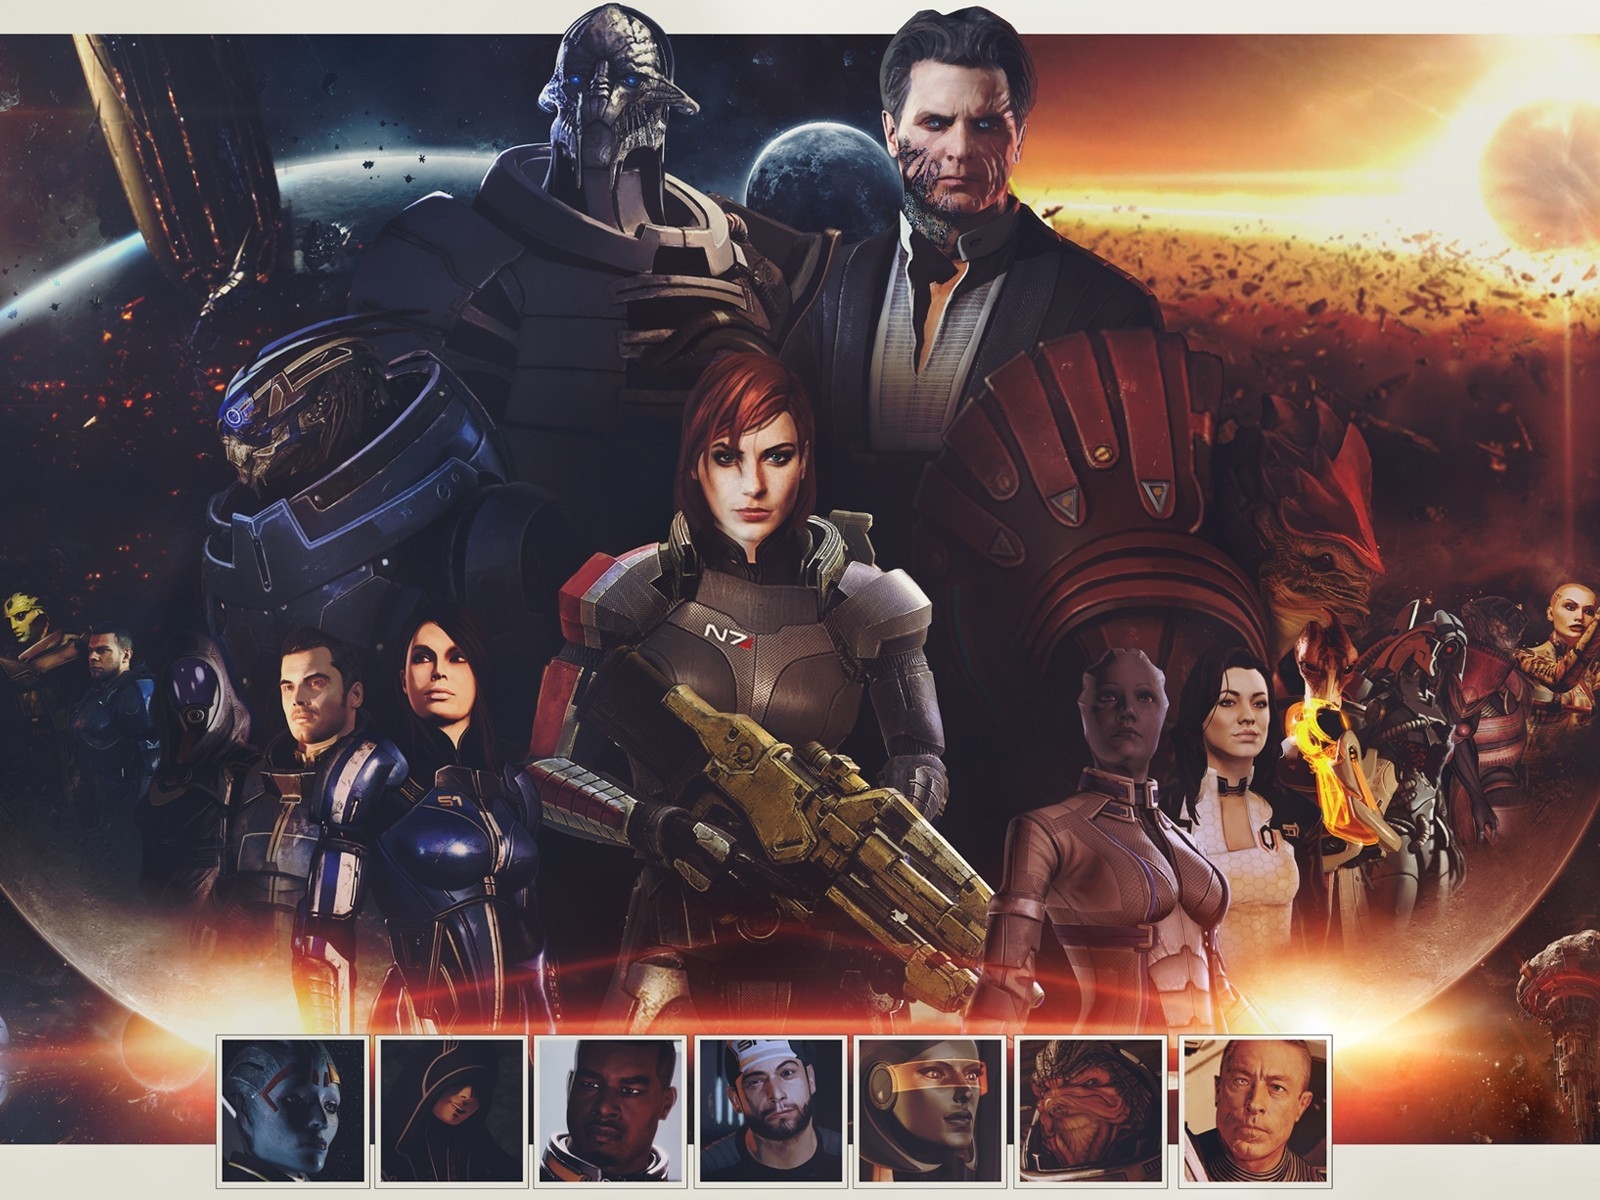 Mass Effect Zaeed Massani for 1600 x 1200 resolution